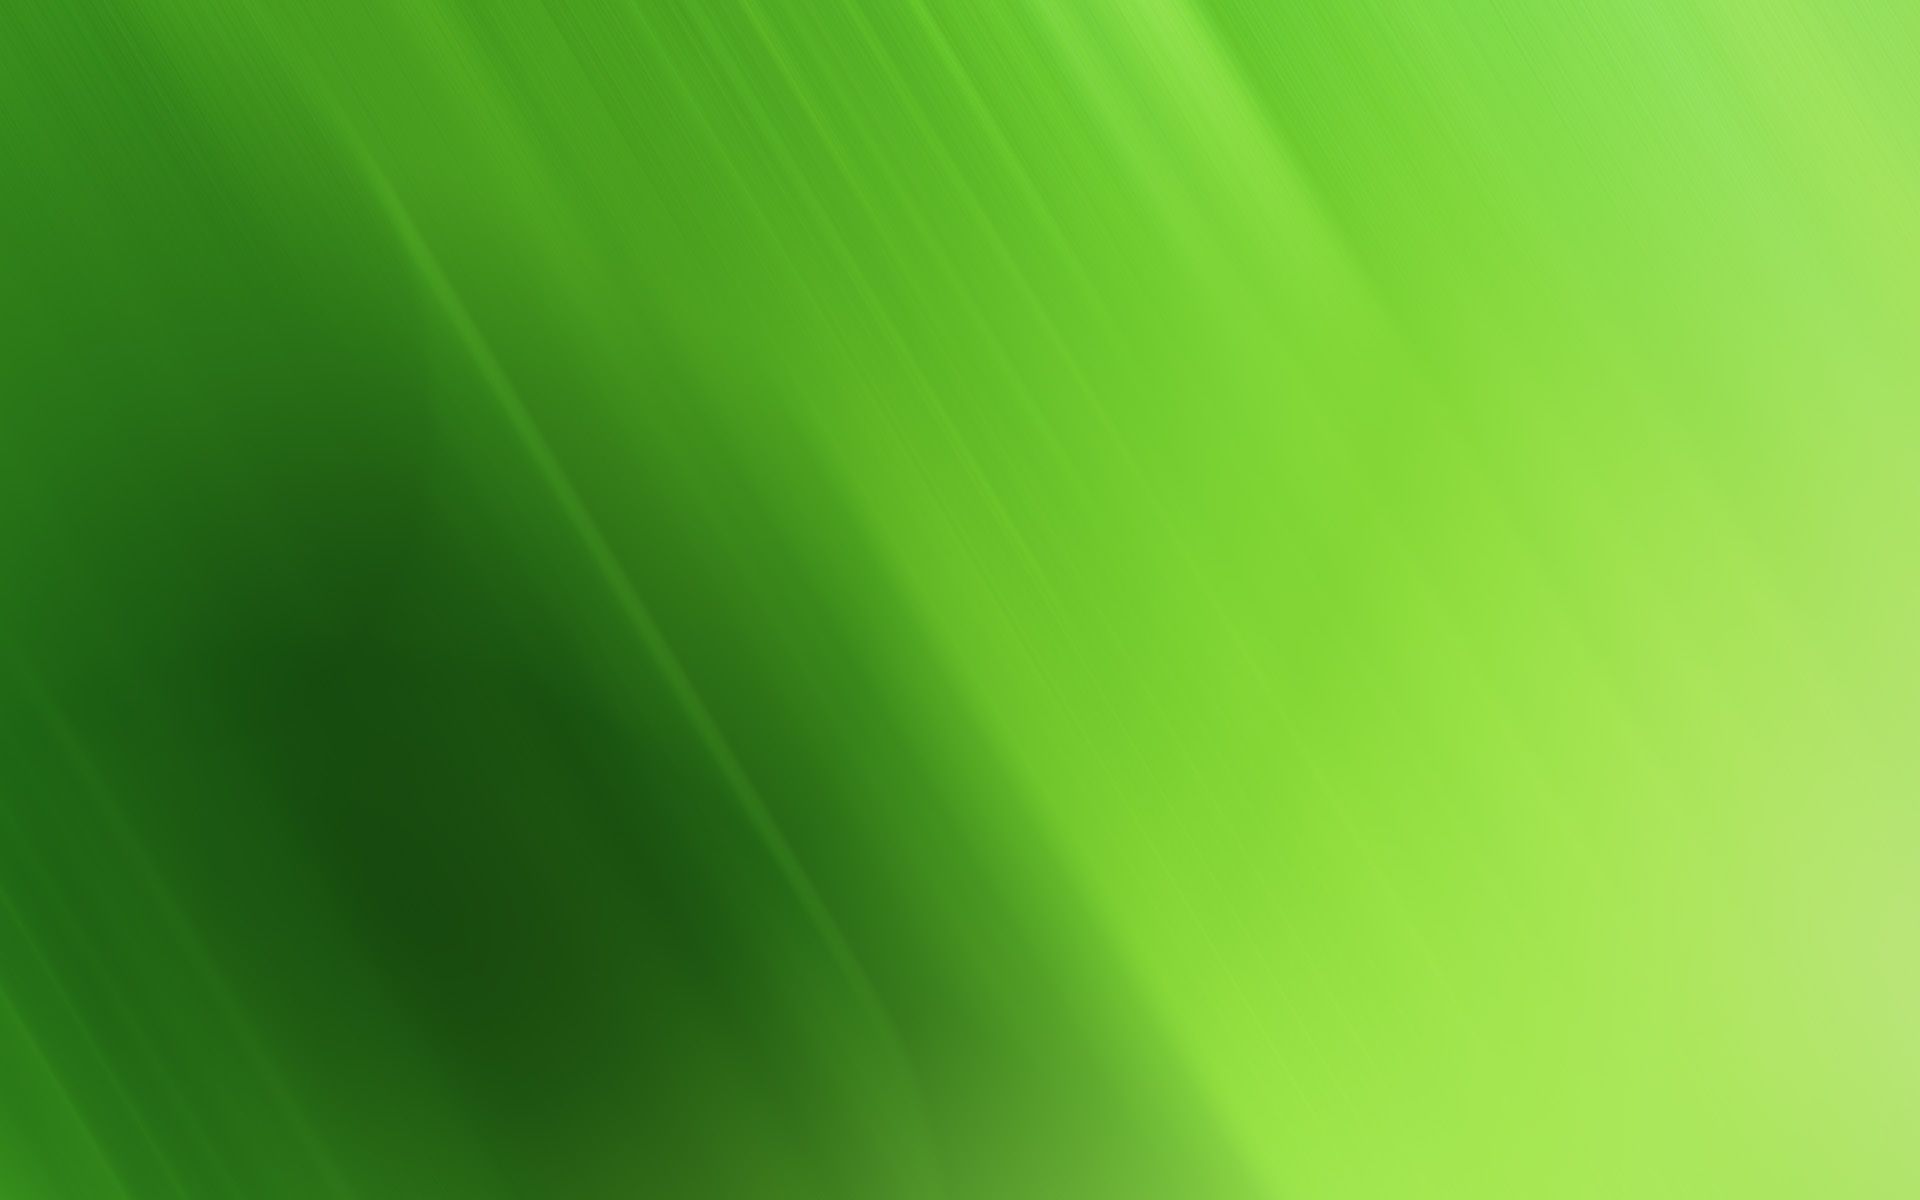 Top Green Desktop Images for Pinterest